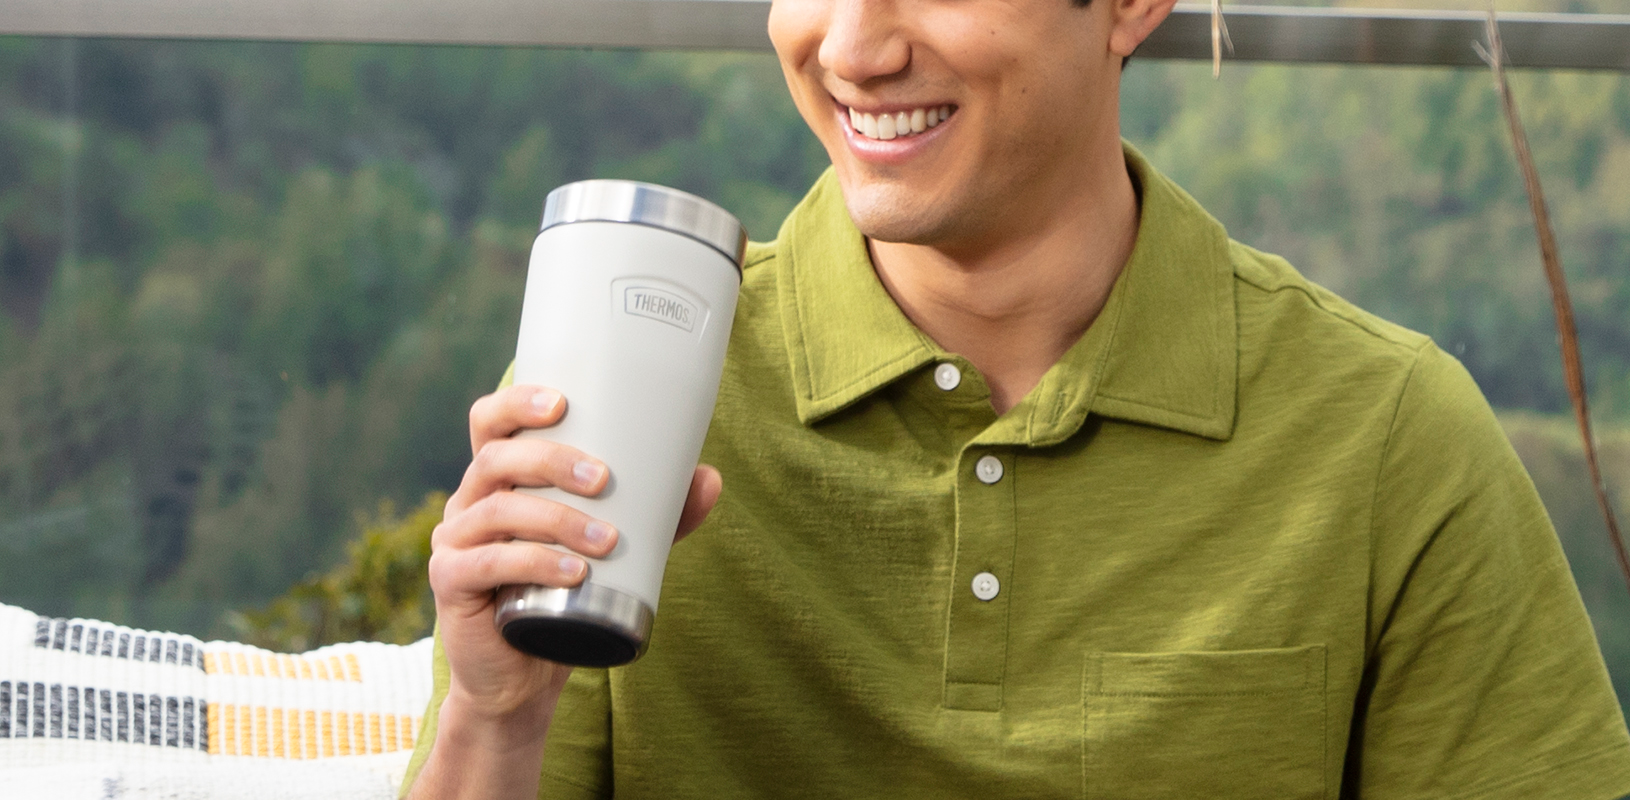 Le thermos mug à affichage digital  Mug thermos café – Chop Chop